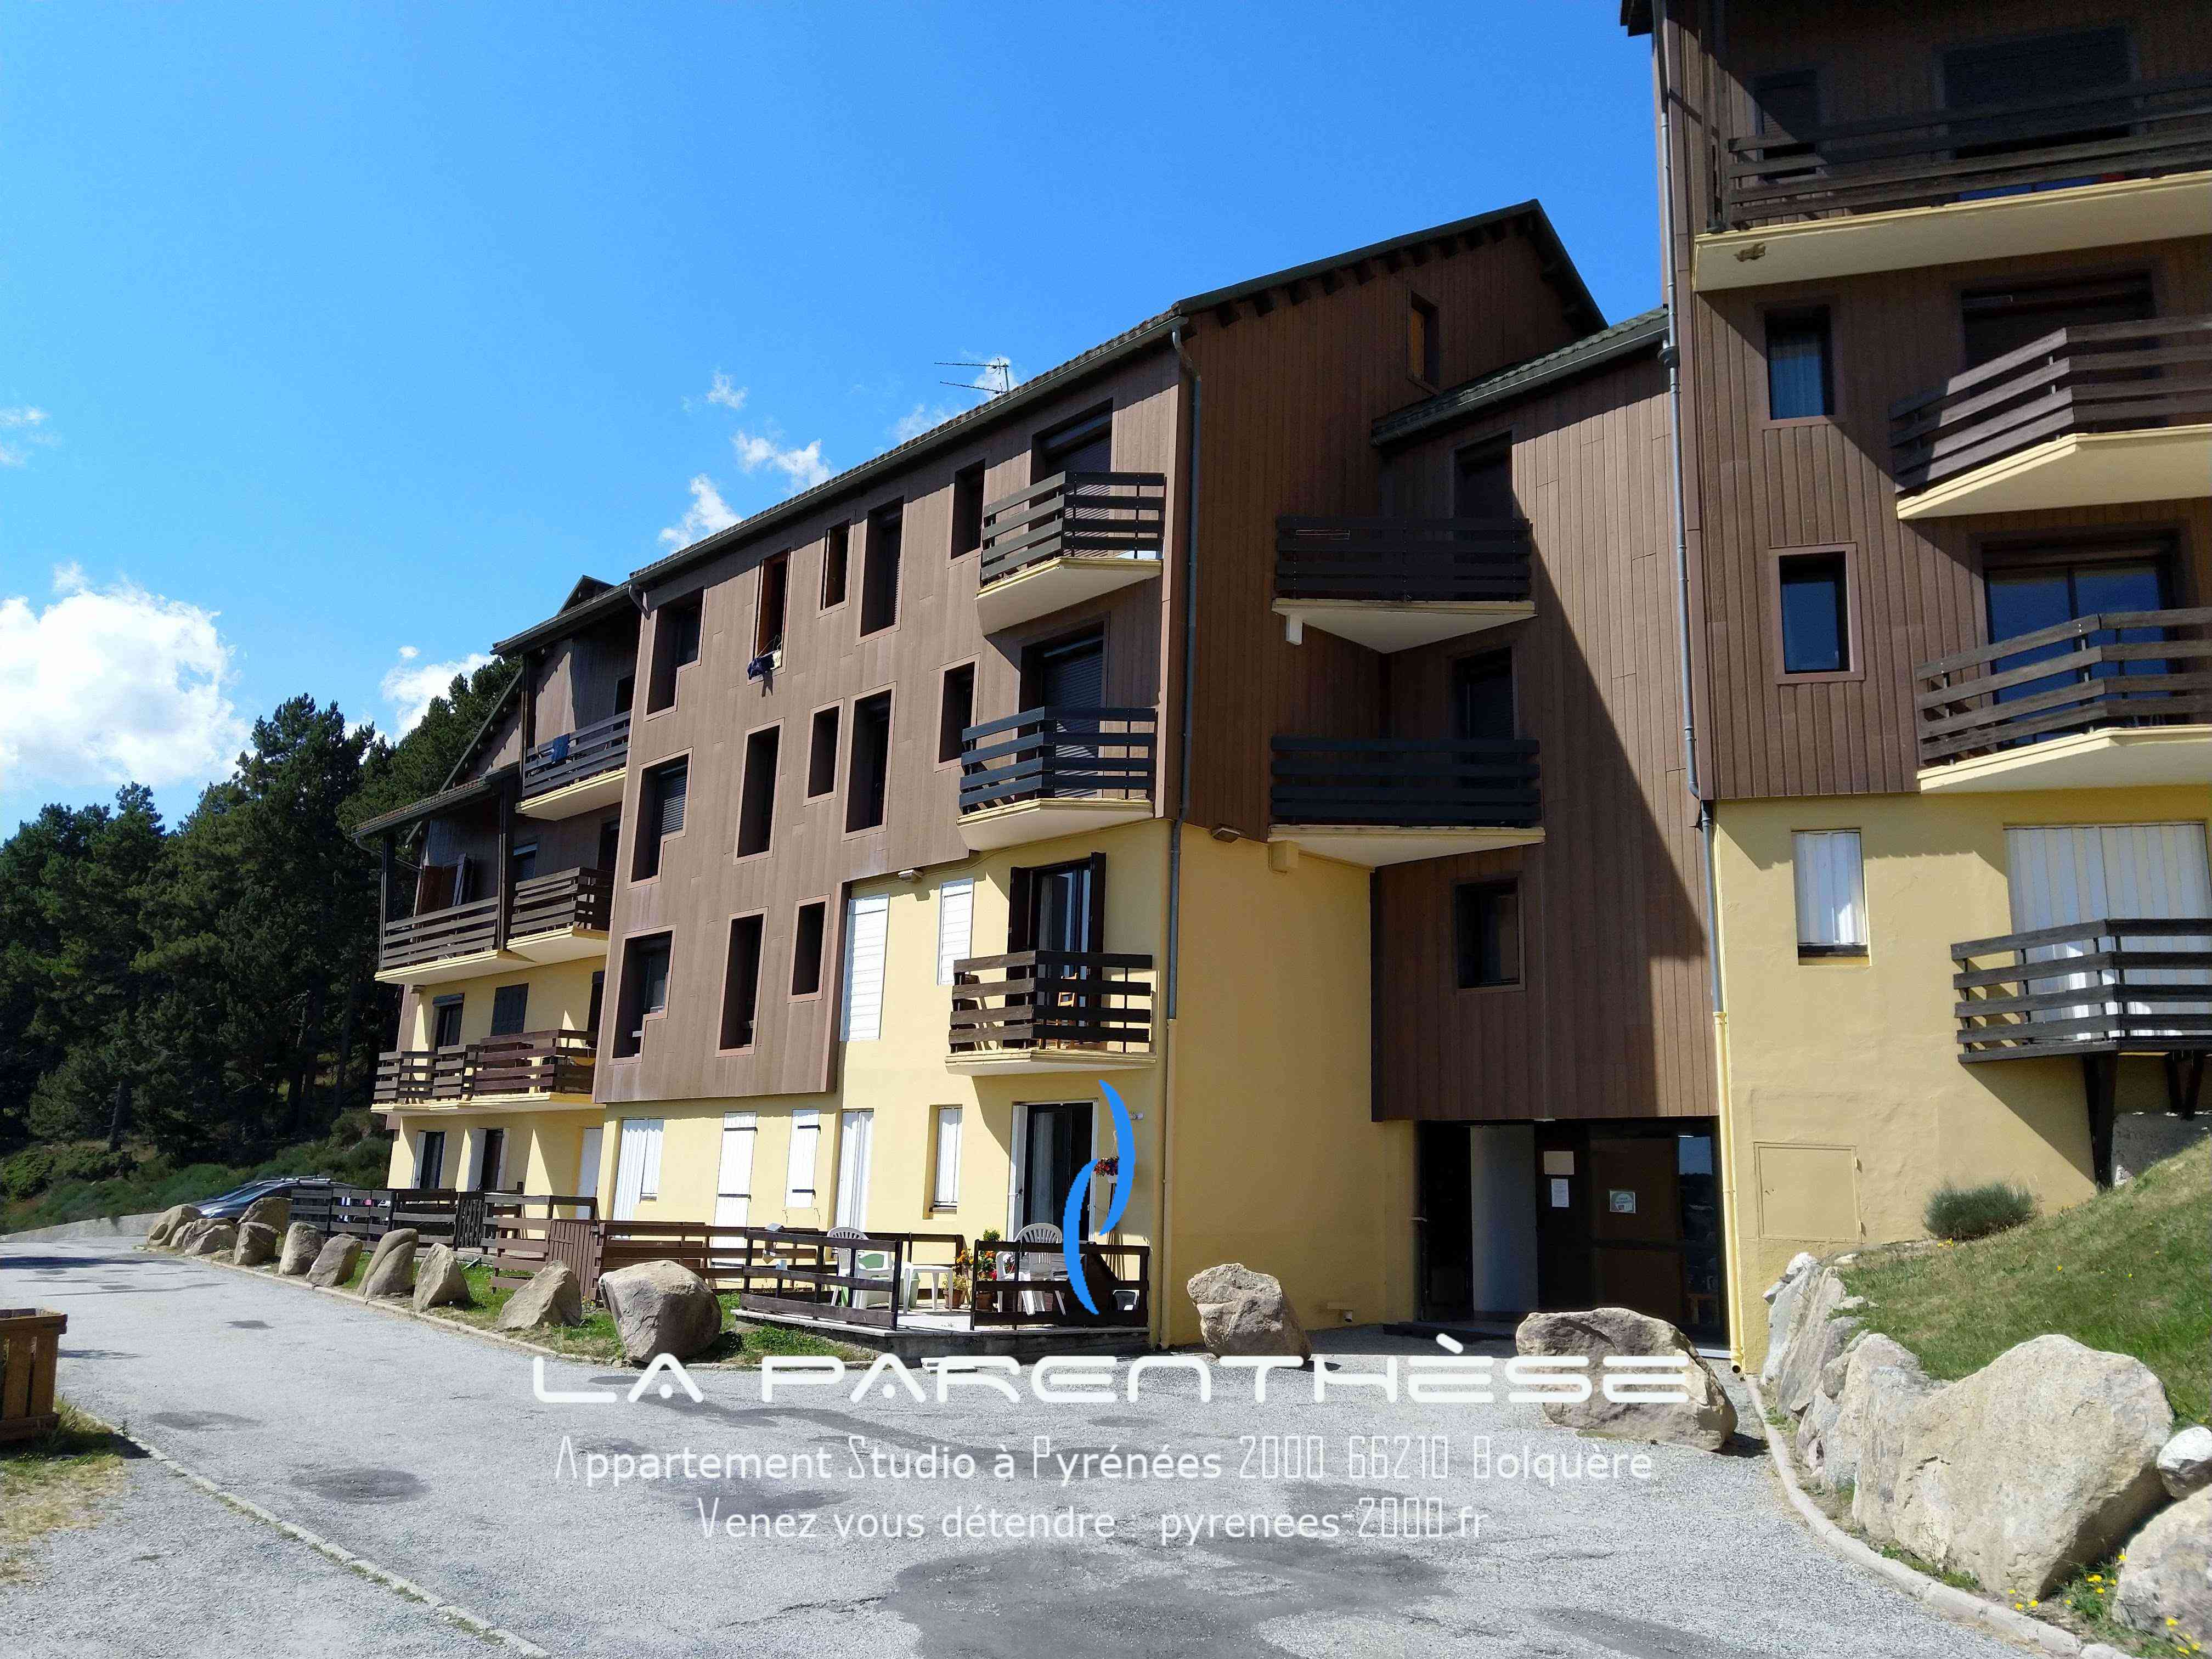 Location-appartement-Studio-vacance-montagne-ski-Bolquere-Pyrénées-2000-Parenthèse